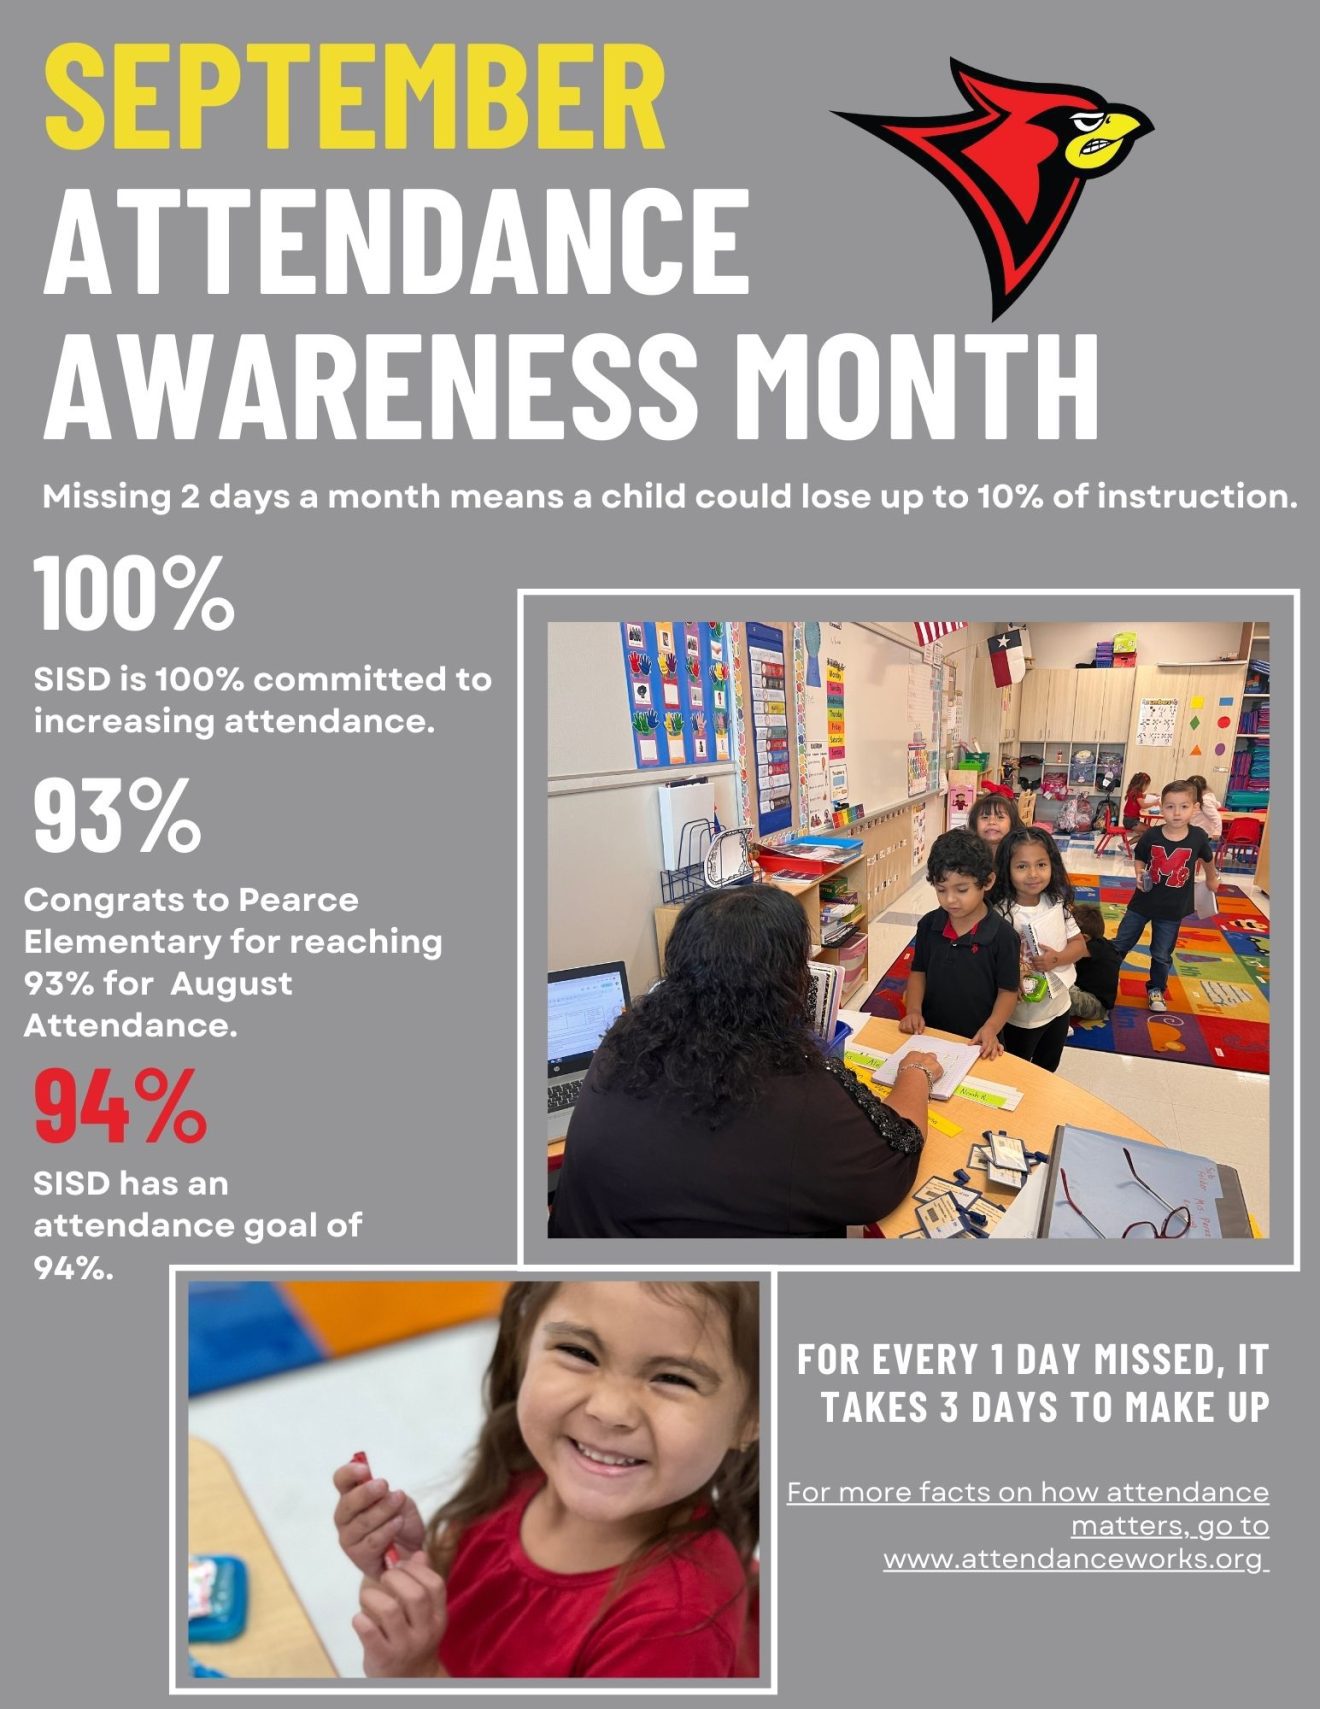 September is Attendance Awareness Month